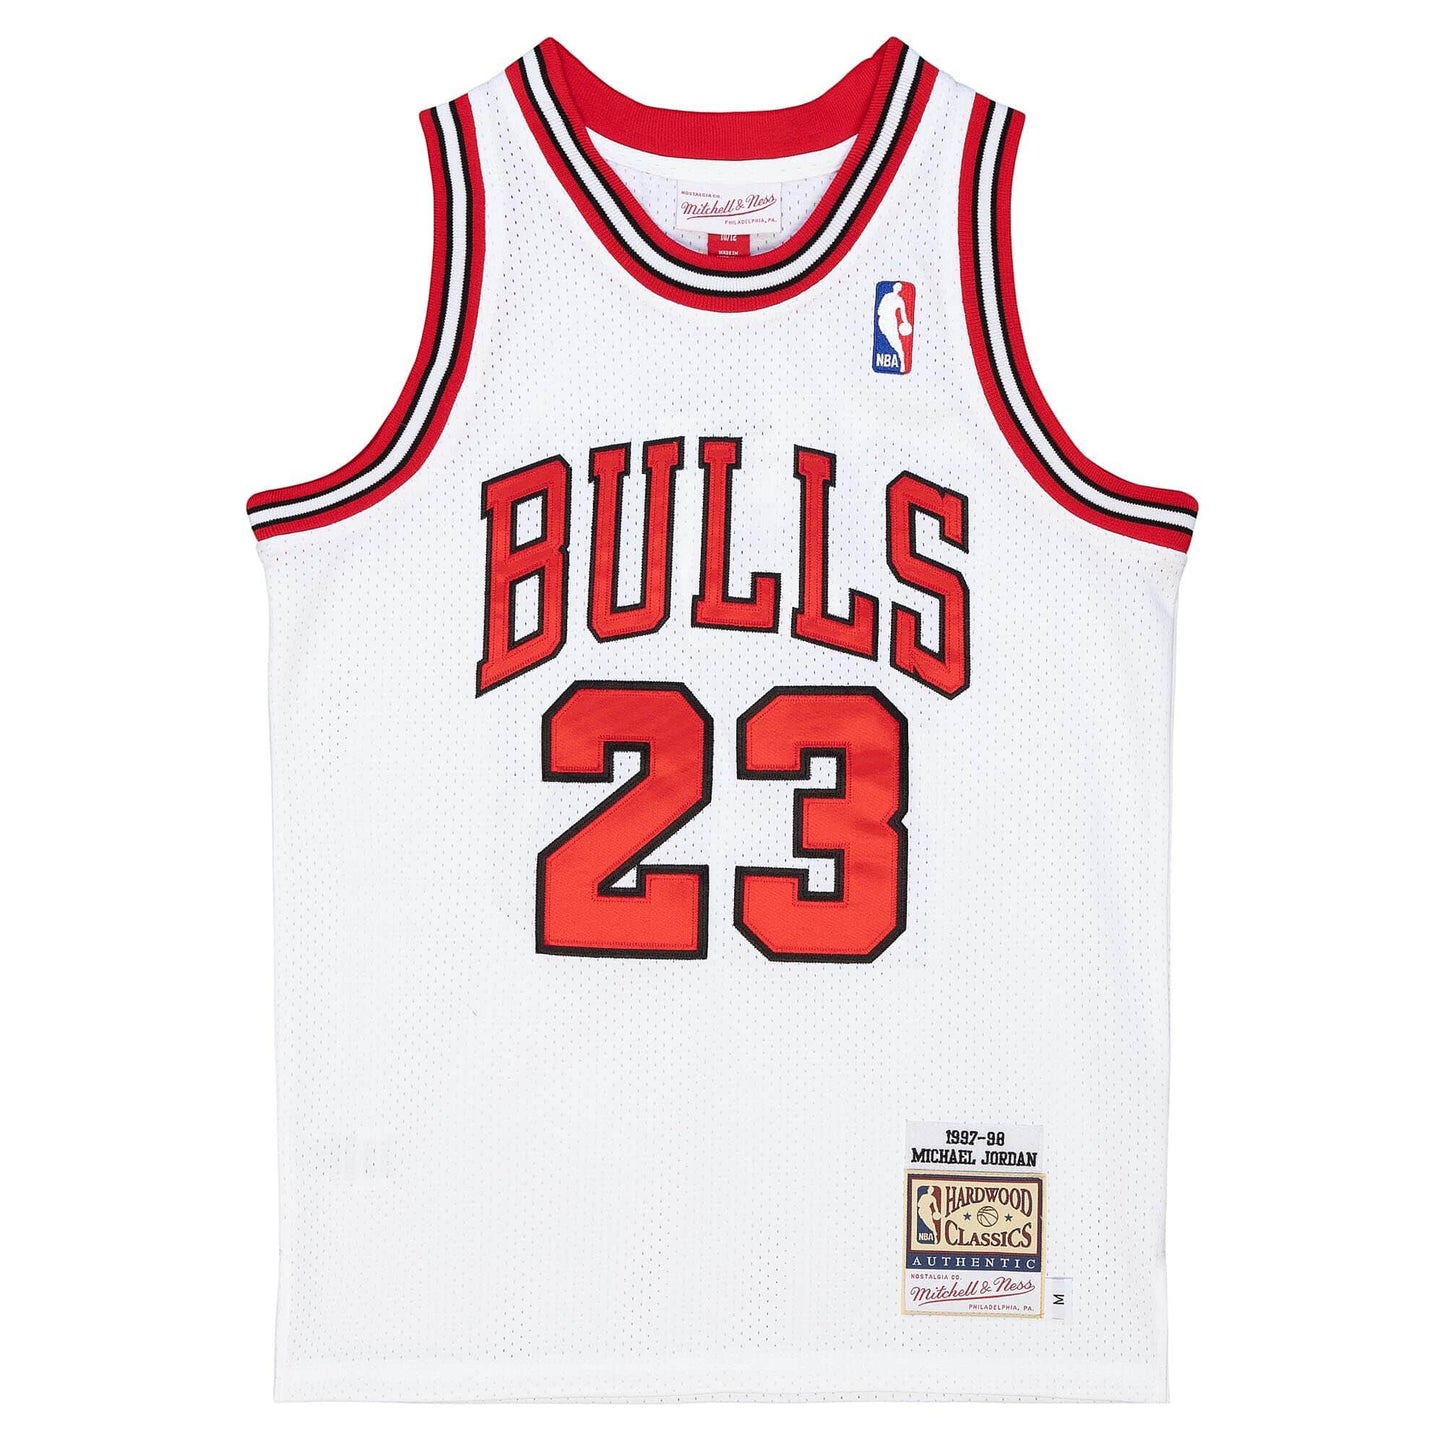 Authentic Jordans 3 Michael Jordans Chicago Bulls Jersey